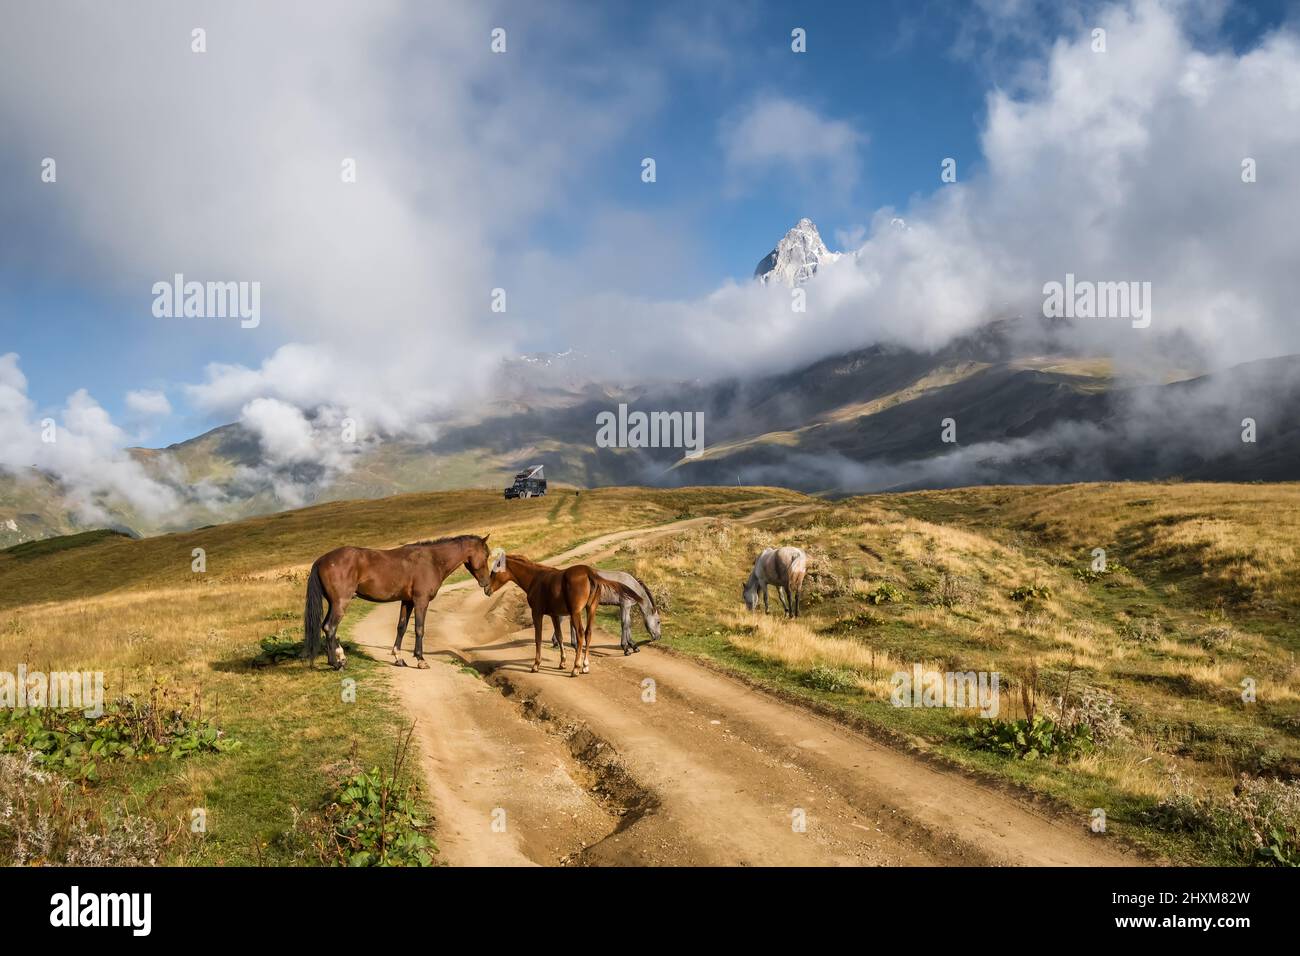 Wild horses grazing in Caucasus mountains in Georgia Stock Photo